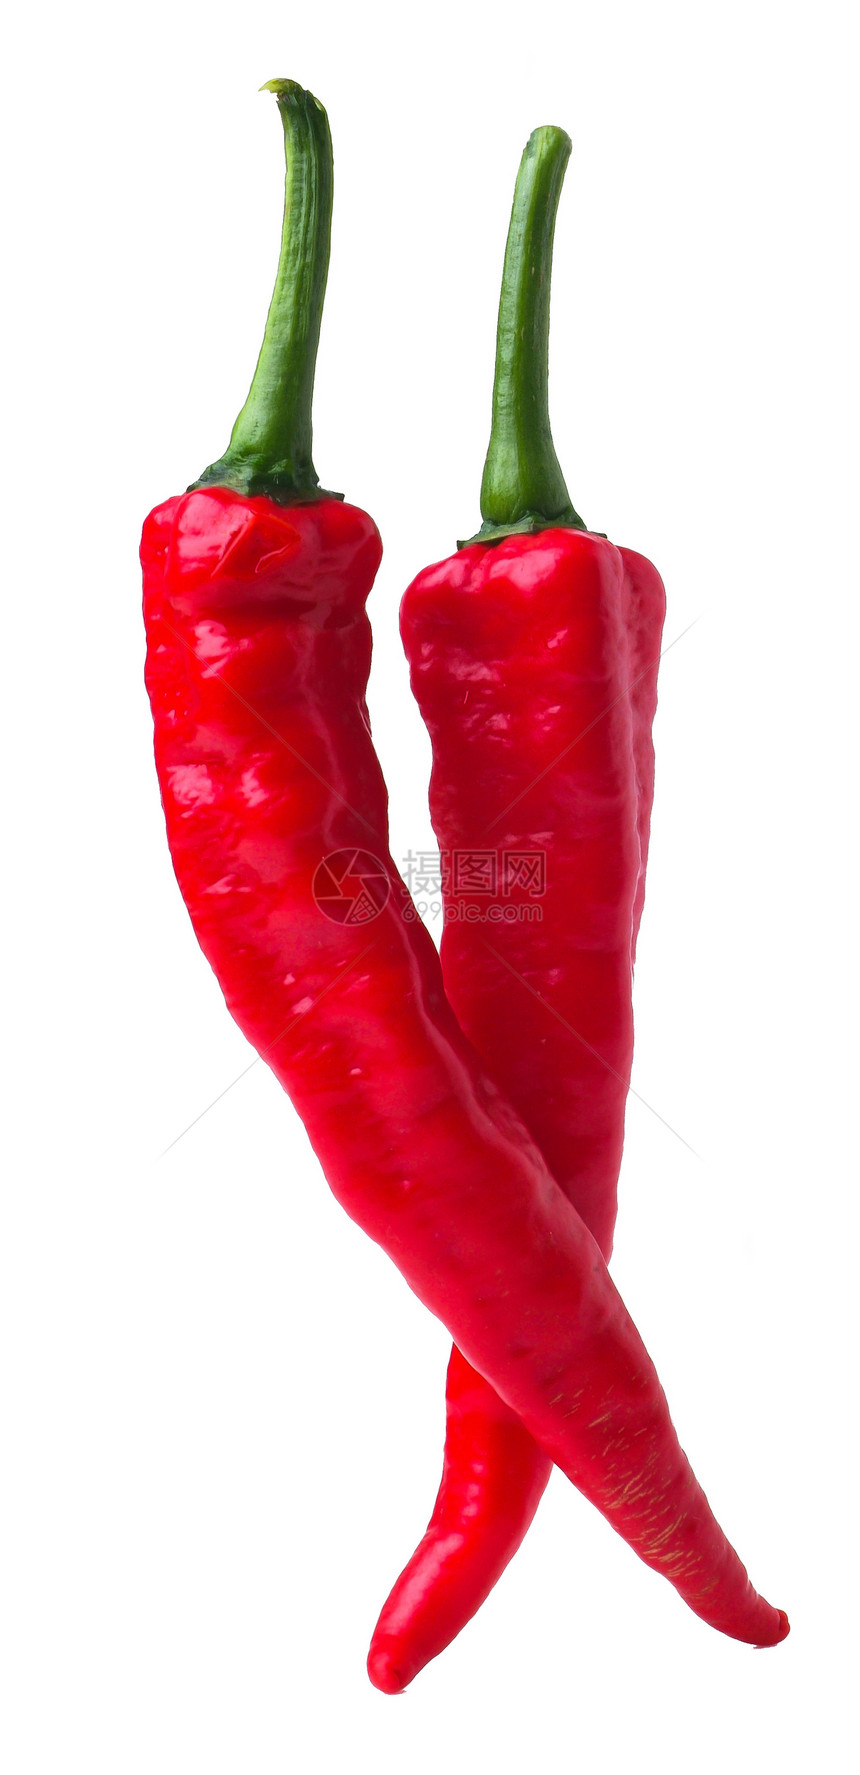 红辣椒孤独辣椒香料红色寒冷胡椒蔬菜食物图片